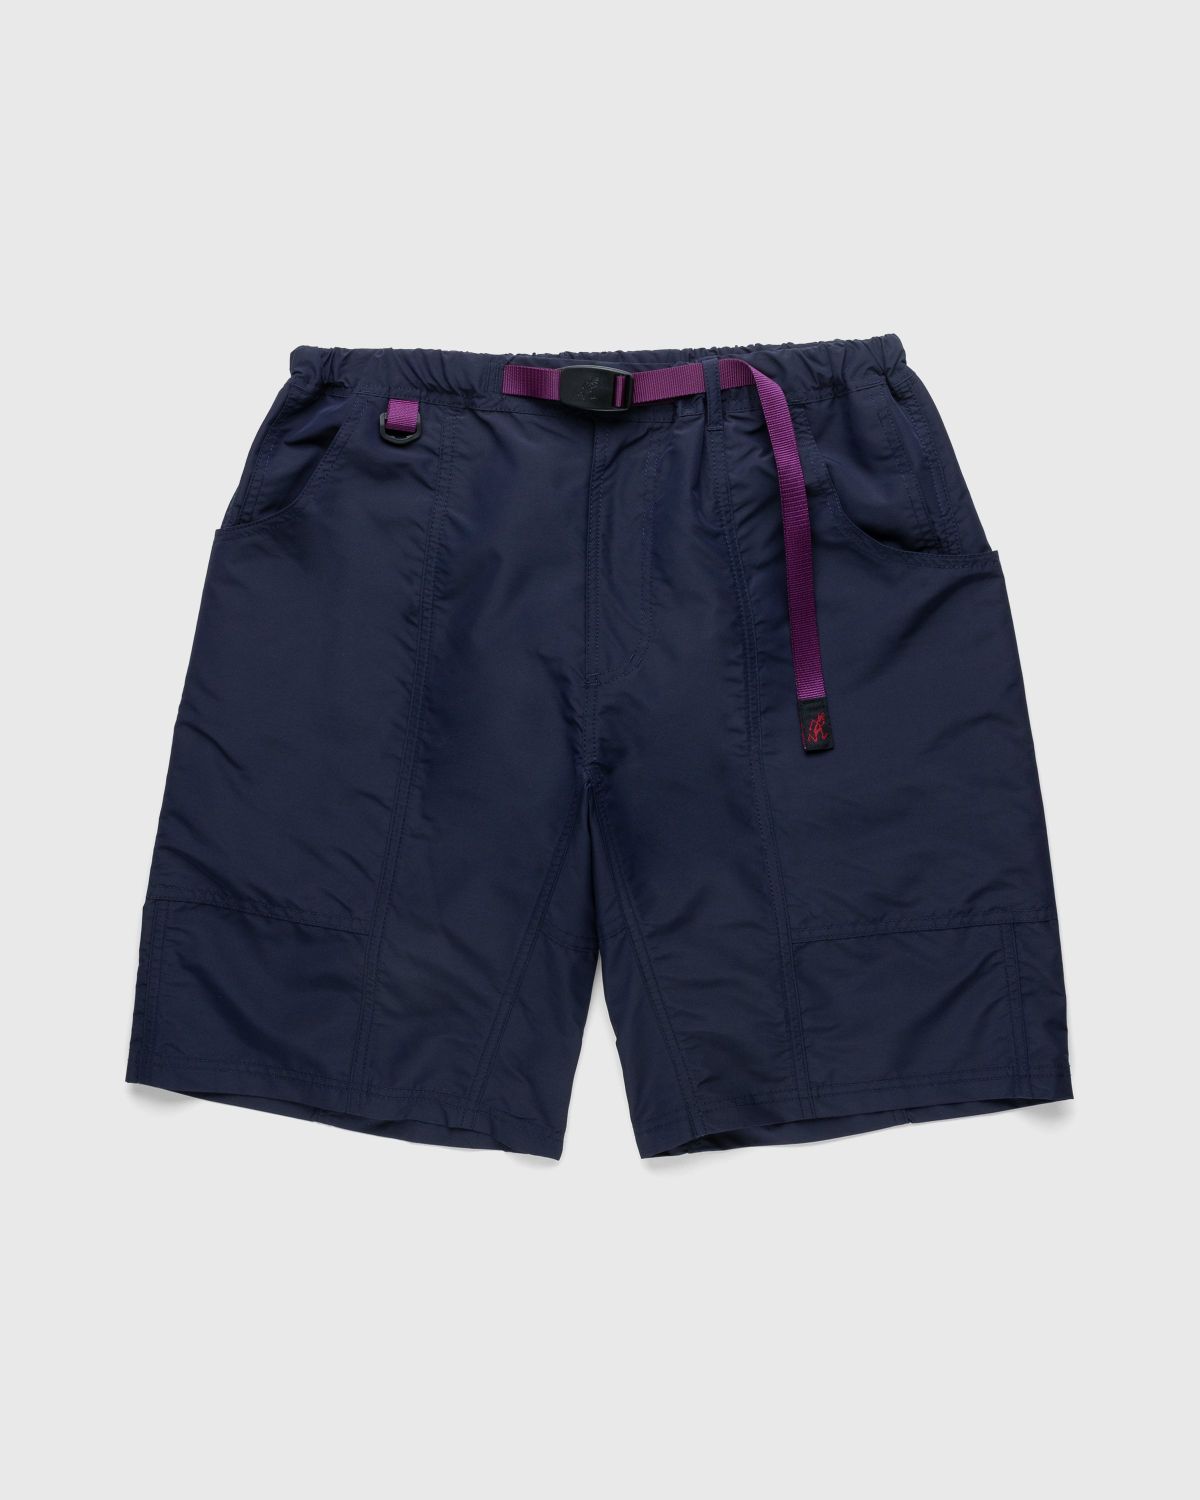 Gramicci – Shell Gear Shorts Navy - Shorts - Blue - Image 1